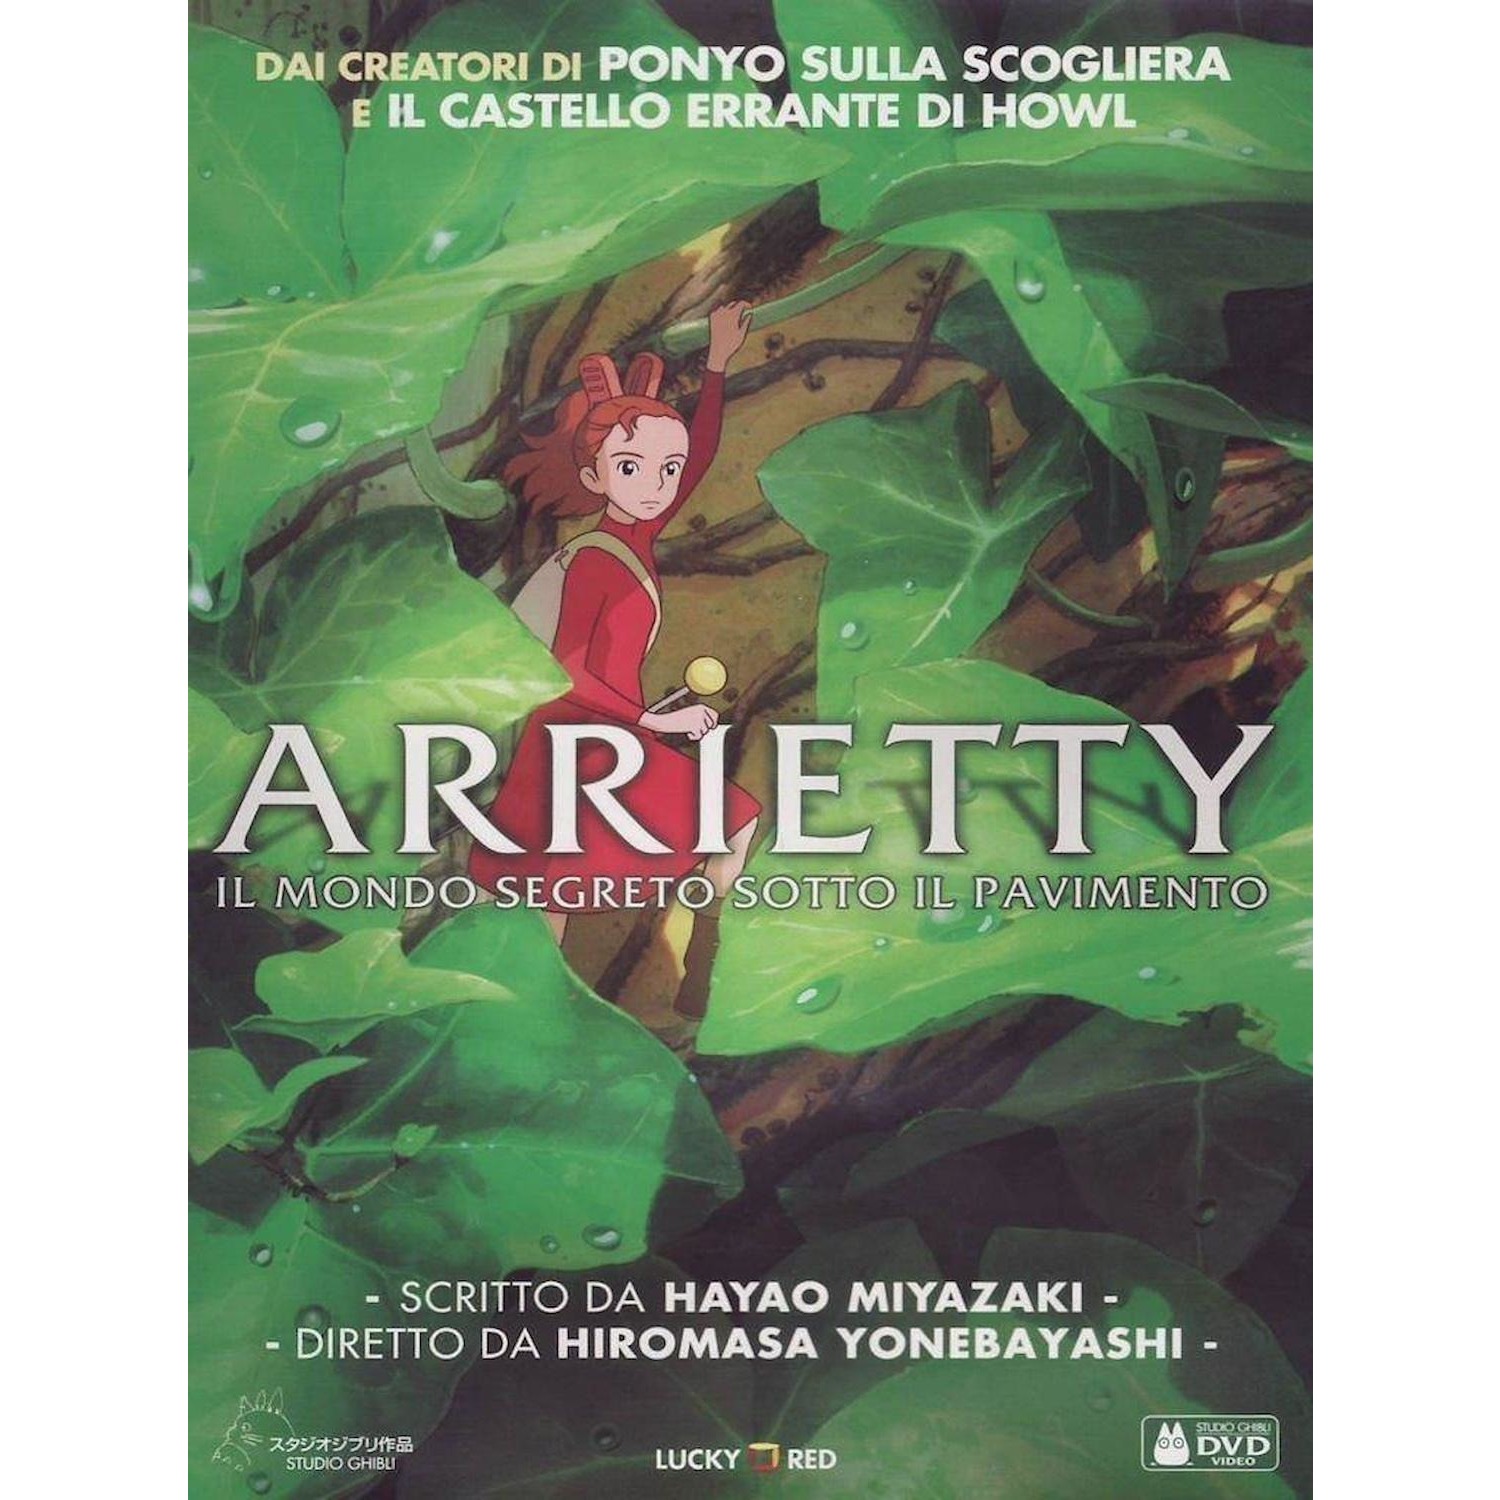 Immagine per DVD Arrietty da DIMOStore